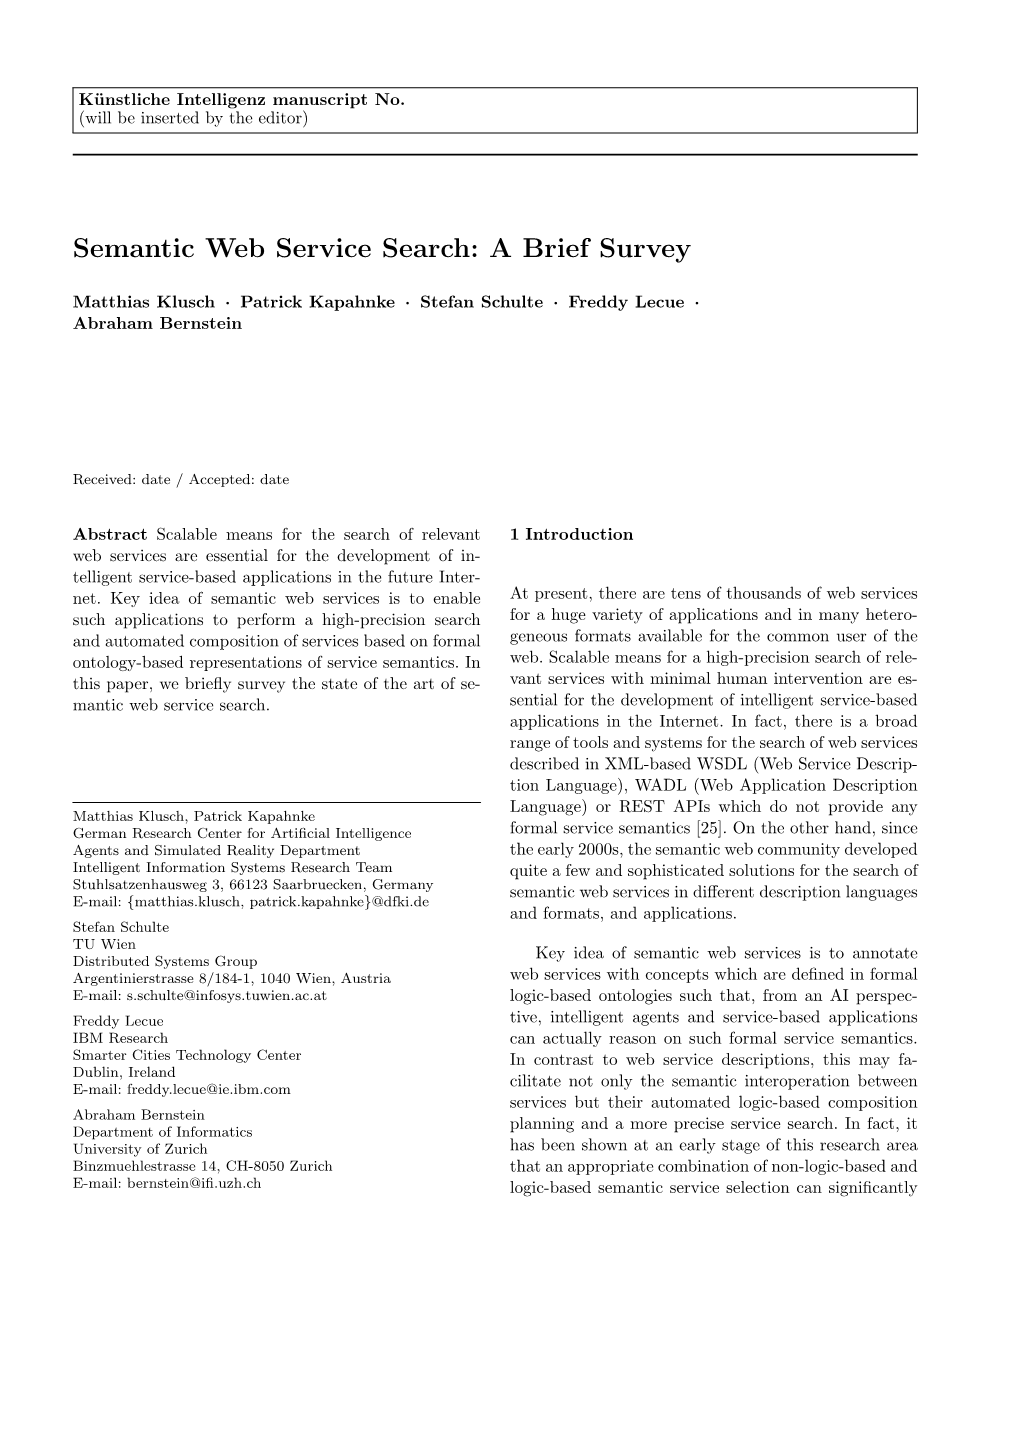 Semantic Web Service Search: a Brief Survey